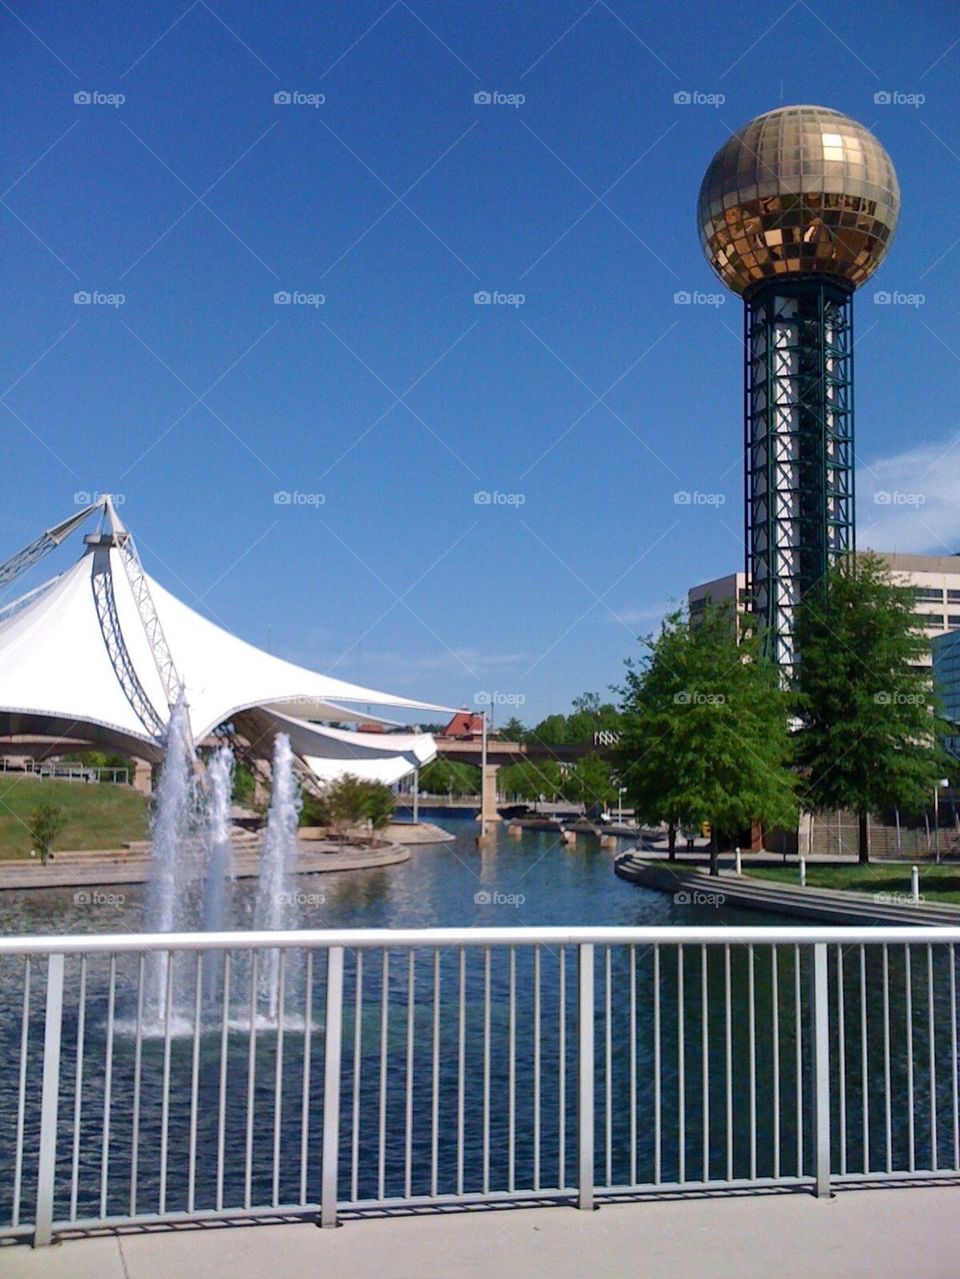 Knoxville World's fair park